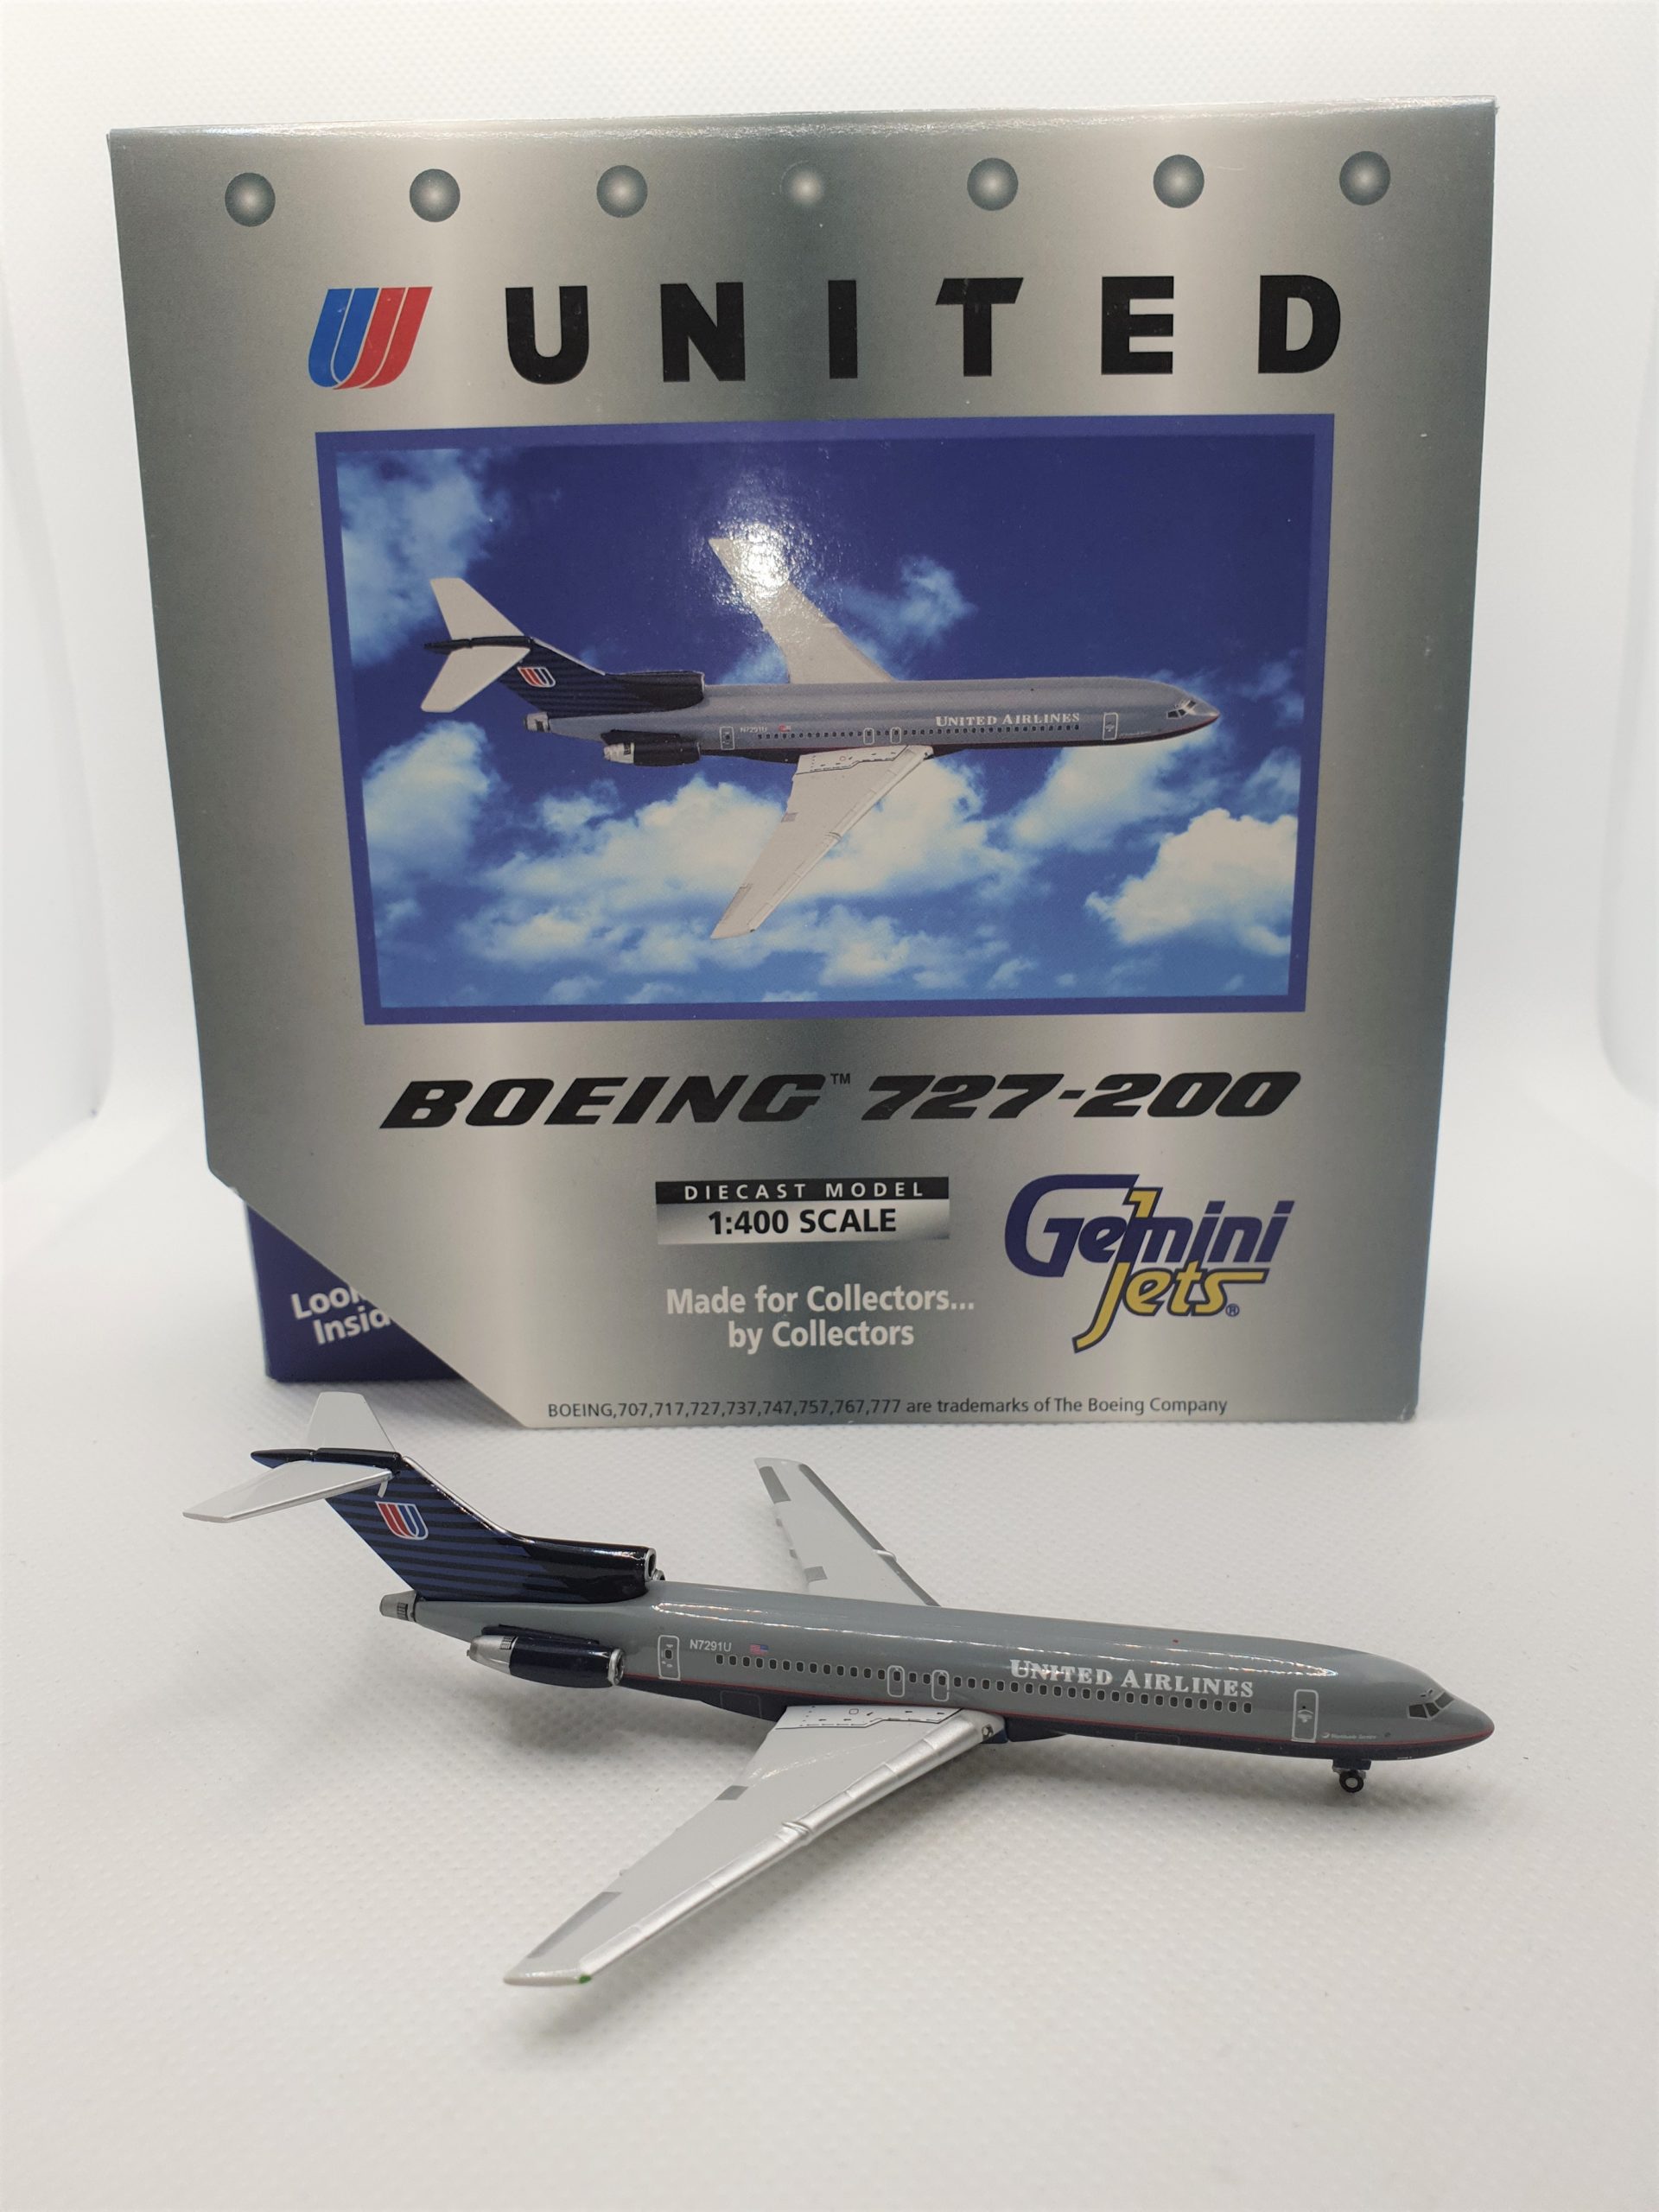 Gemini Jets 1:400 United Airlines N7291U Boeing 727-200